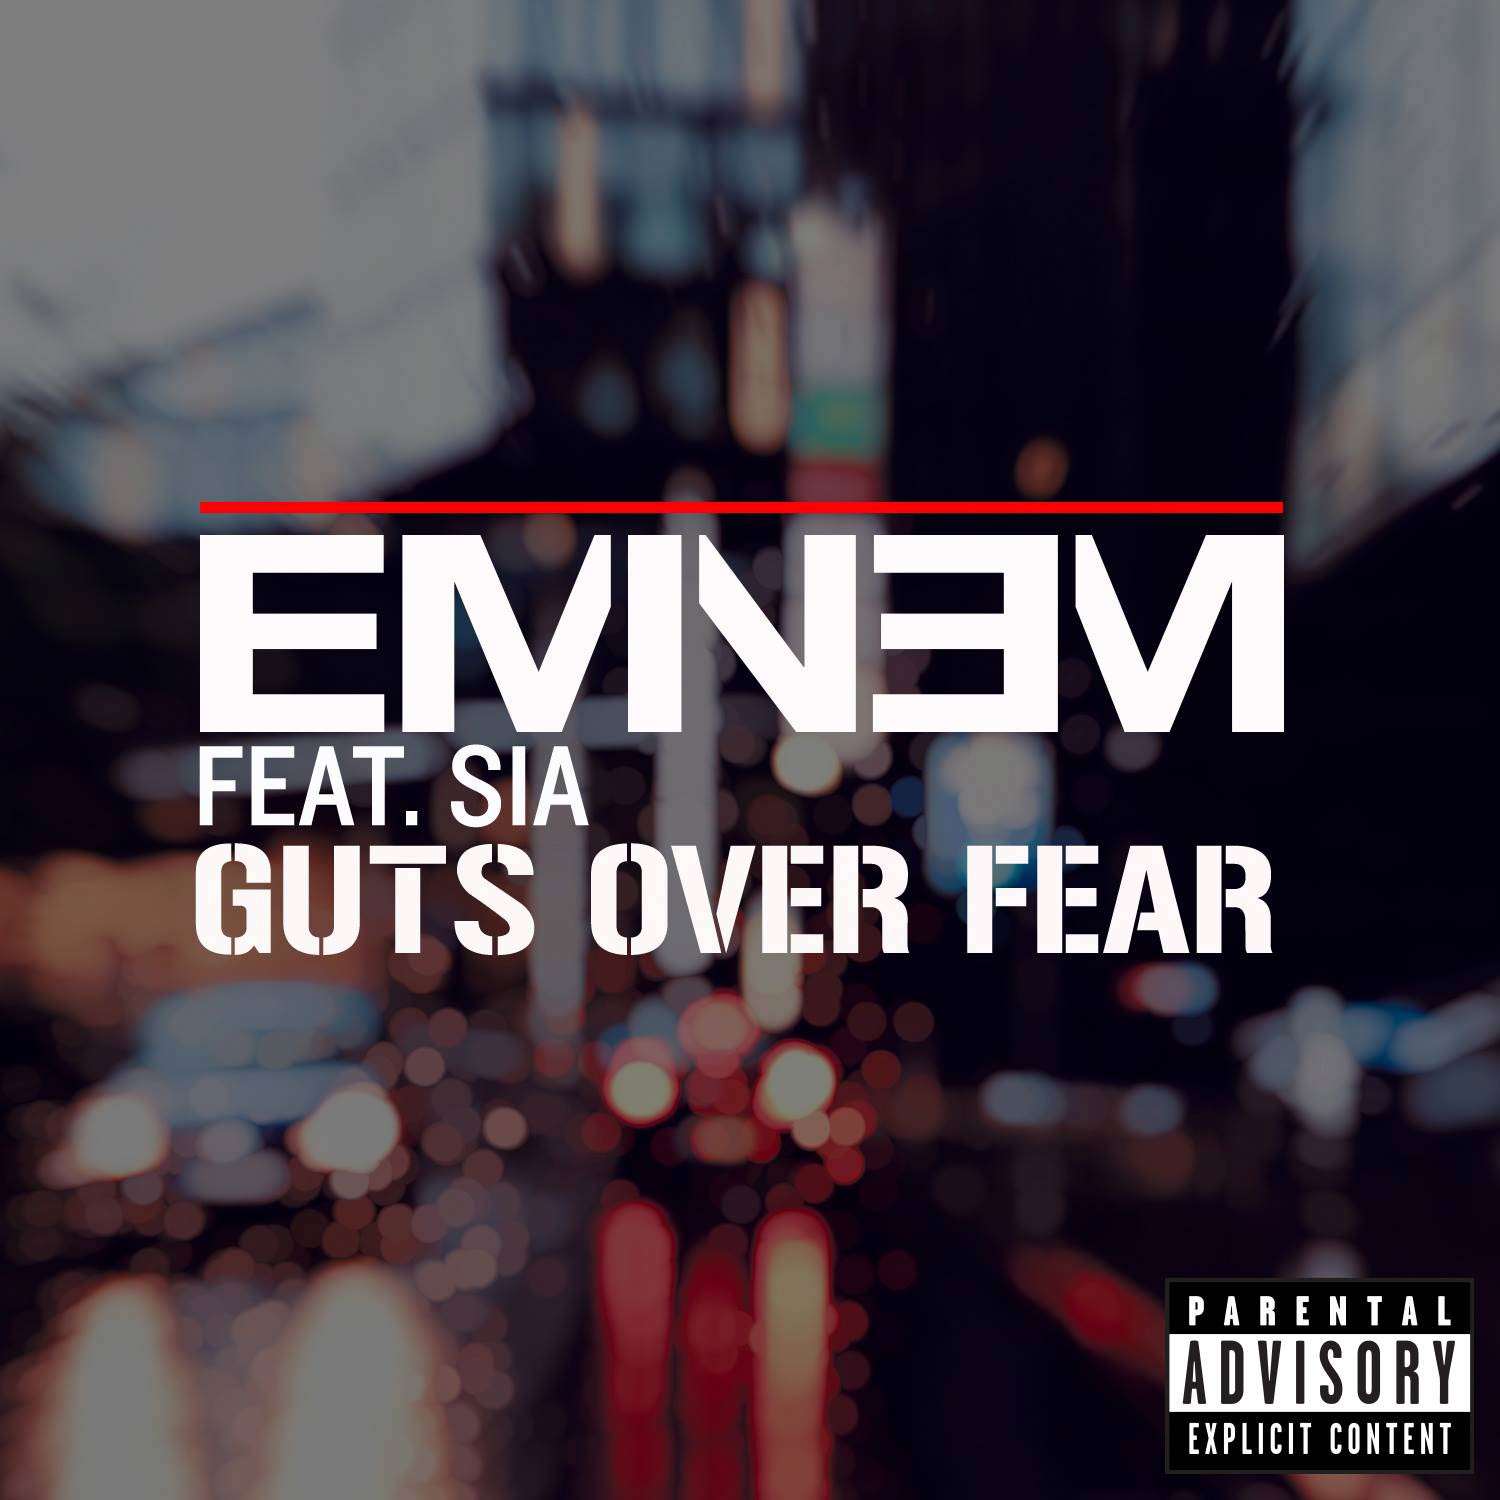 Eminem con Sia: Guts over fear, la portada de la canción